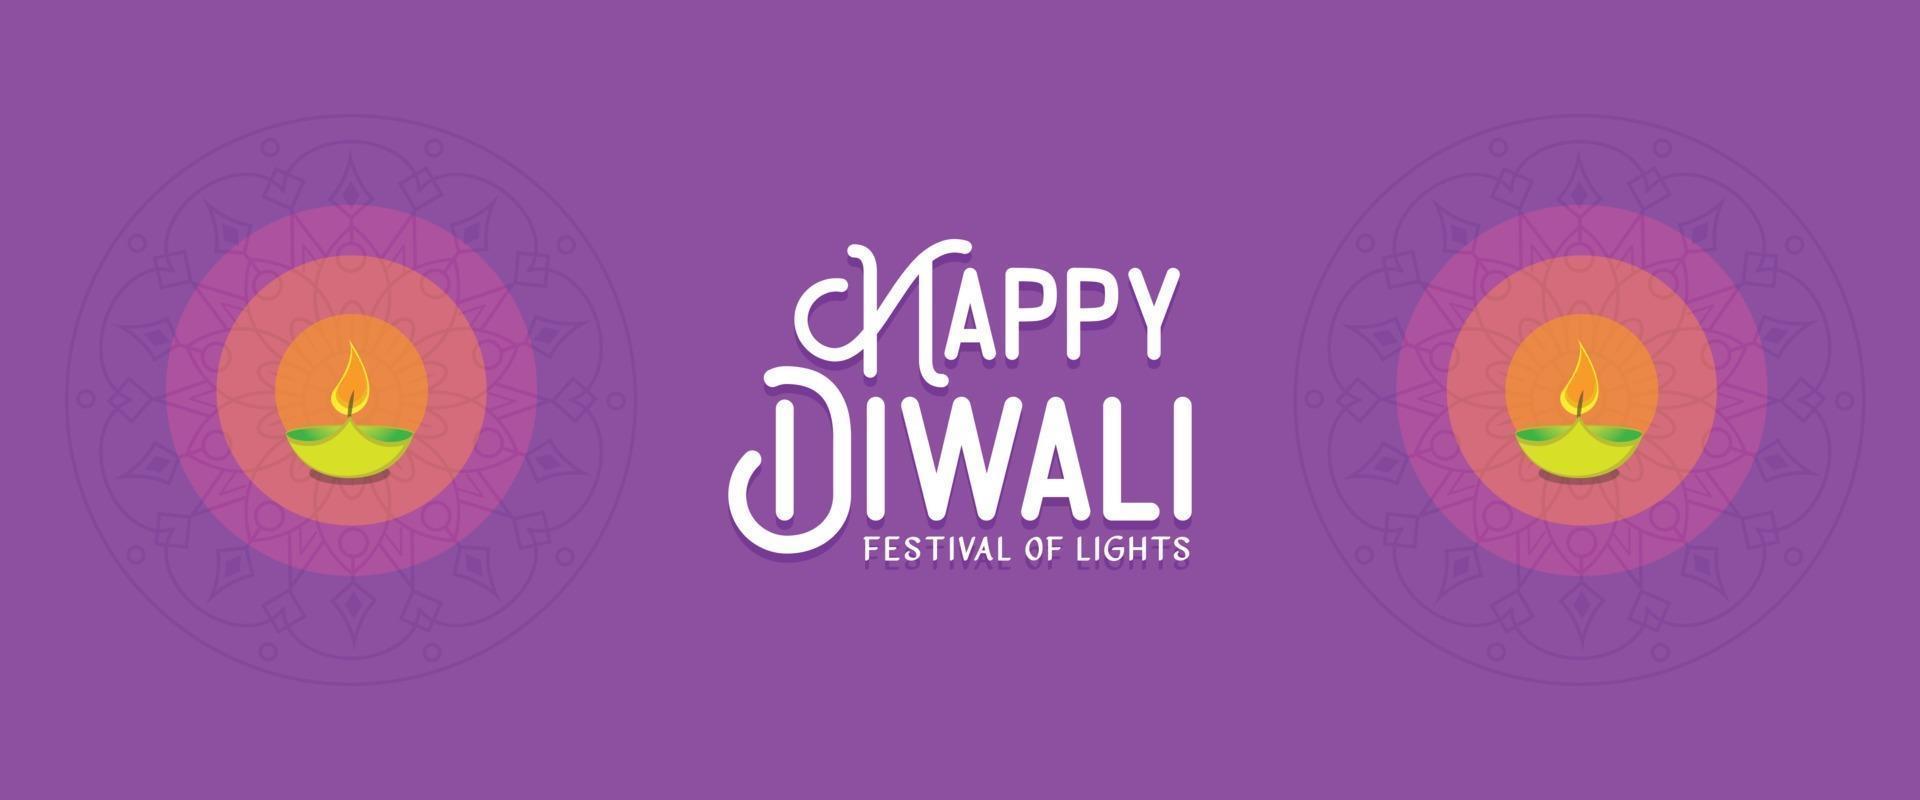 bannière joyeux diwali avec vecteur de lampe à télécharger gratuitement